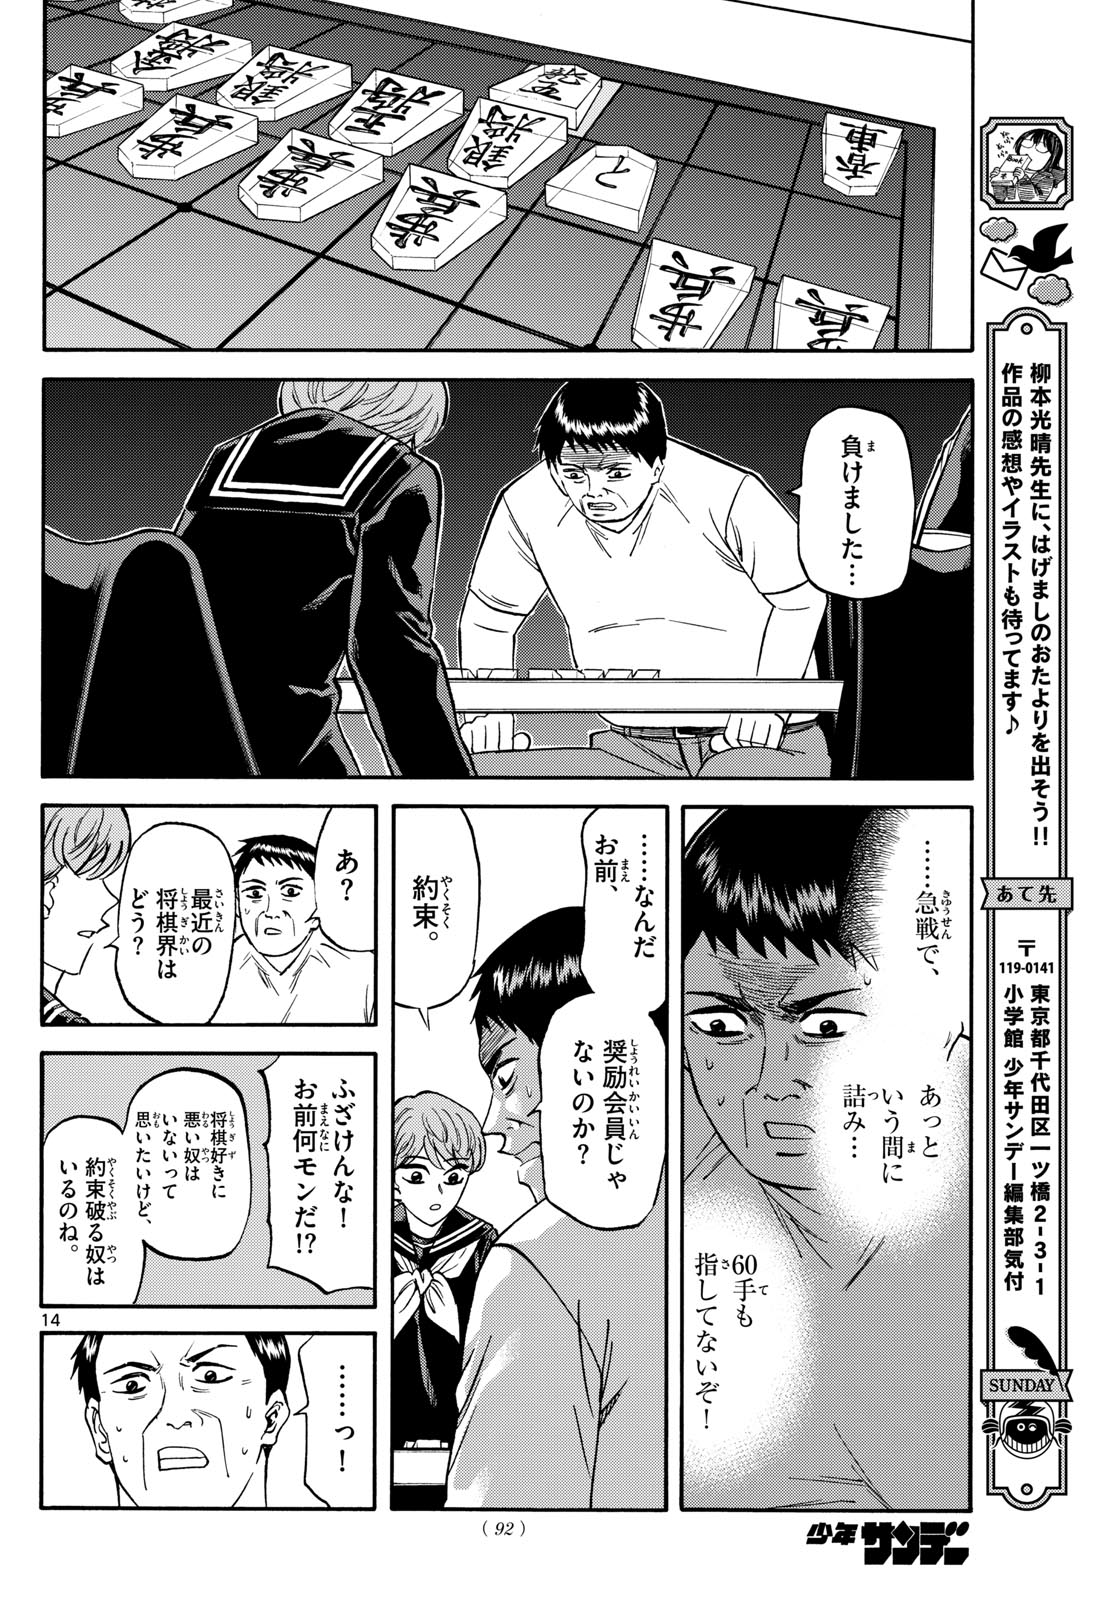 Tatsu to Ichigo - Chapter 185 - Page 14